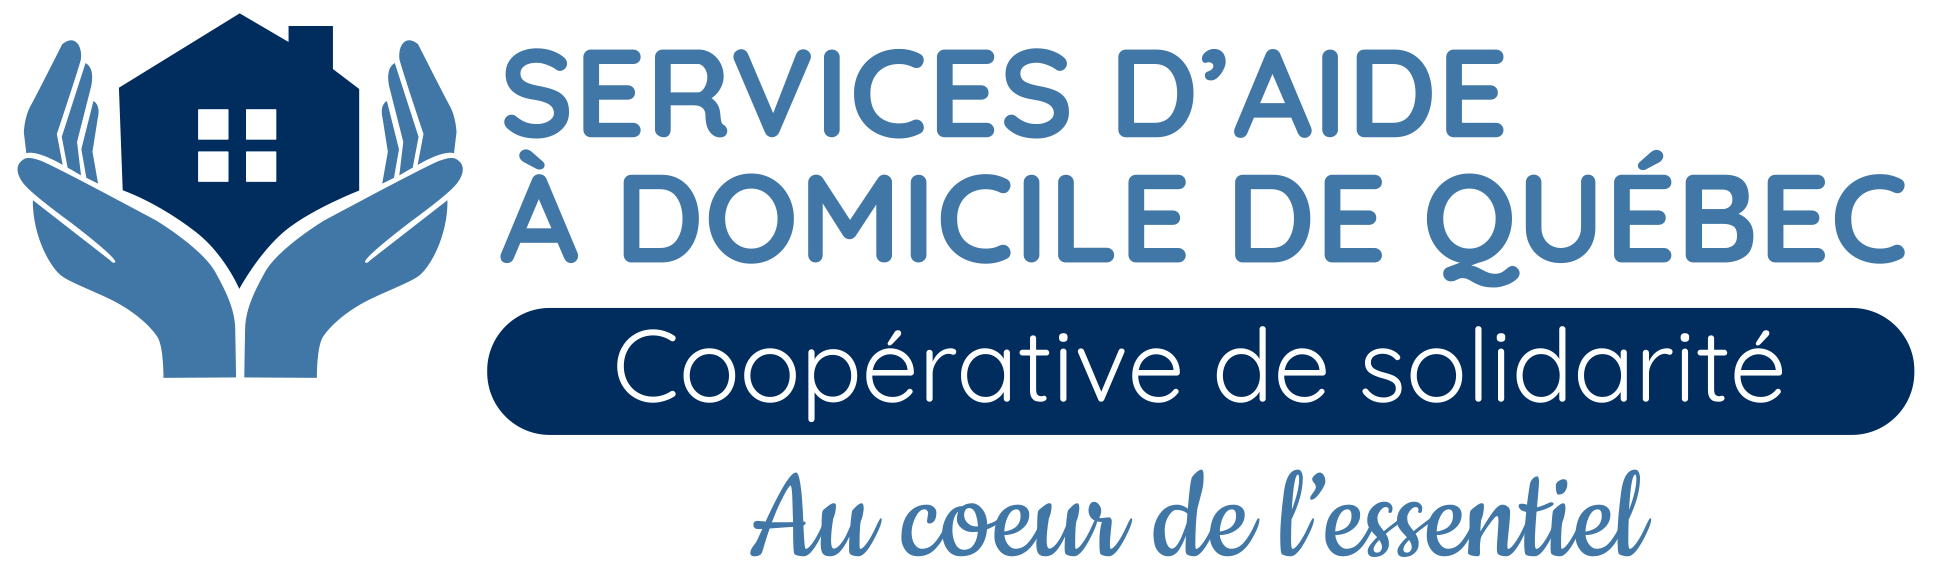 Coopérative de solidarité de services d'aide à domicile de Québec (CSSDQ)